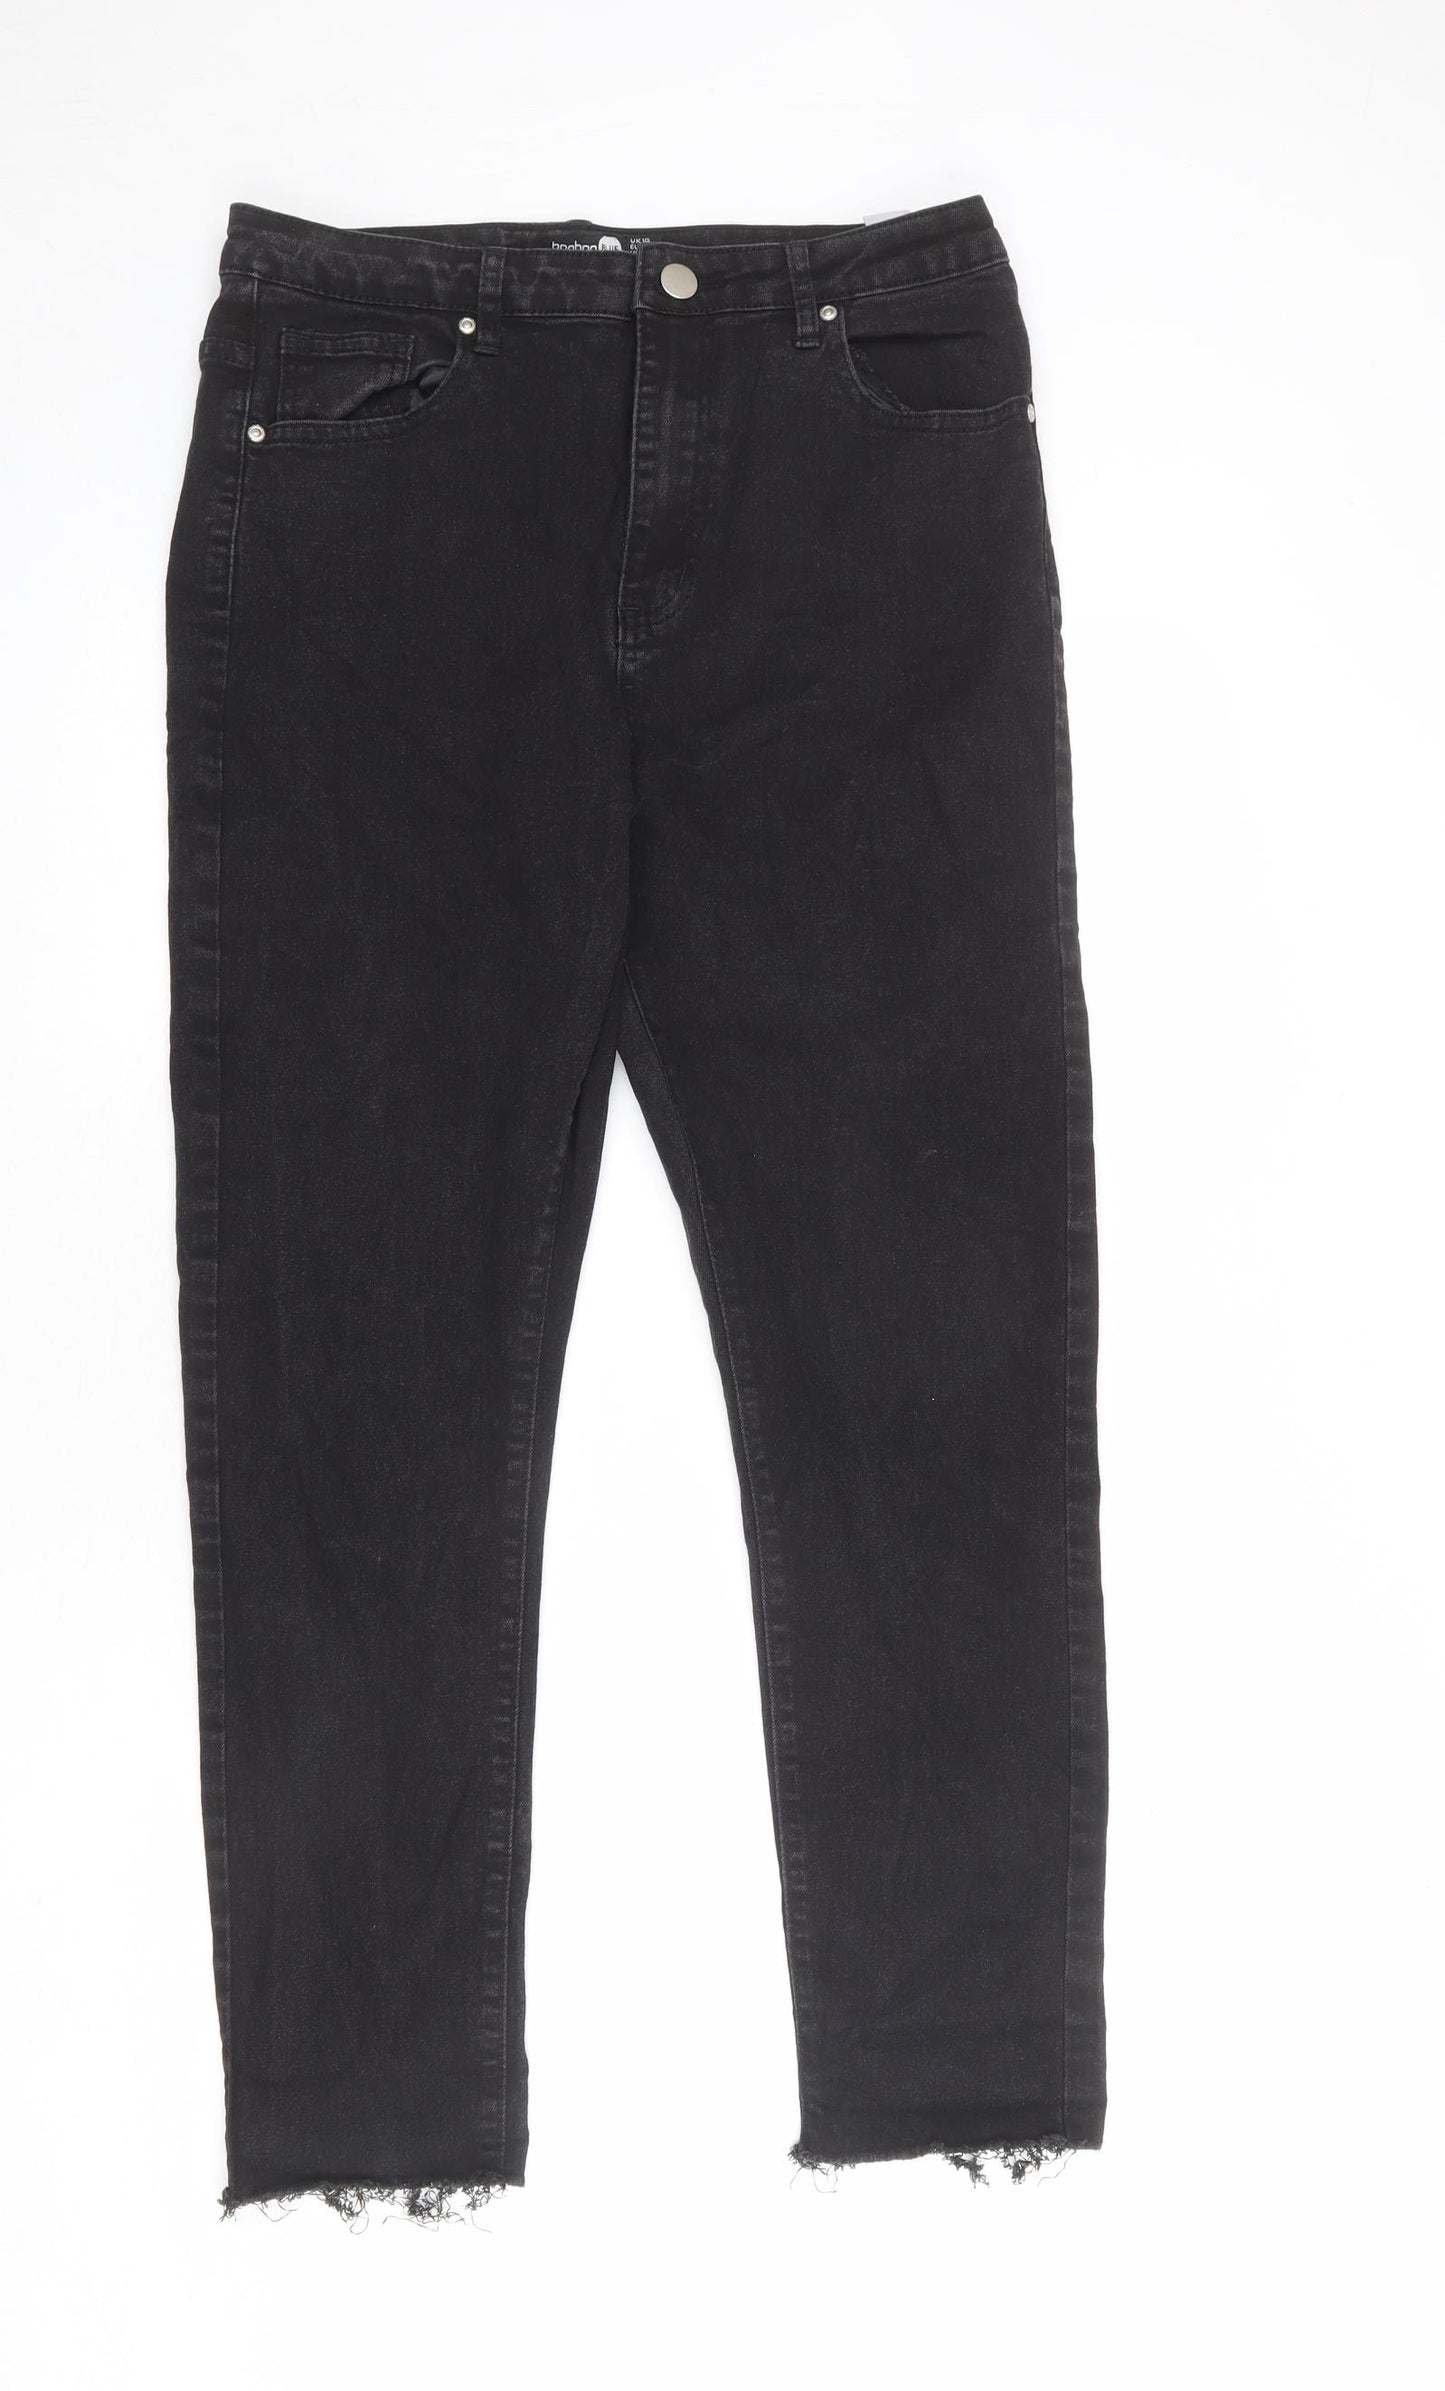 Boohoo Womens Black Cotton Skinny Jeans Size 14 L27 in Regular Zip - Raw Hem